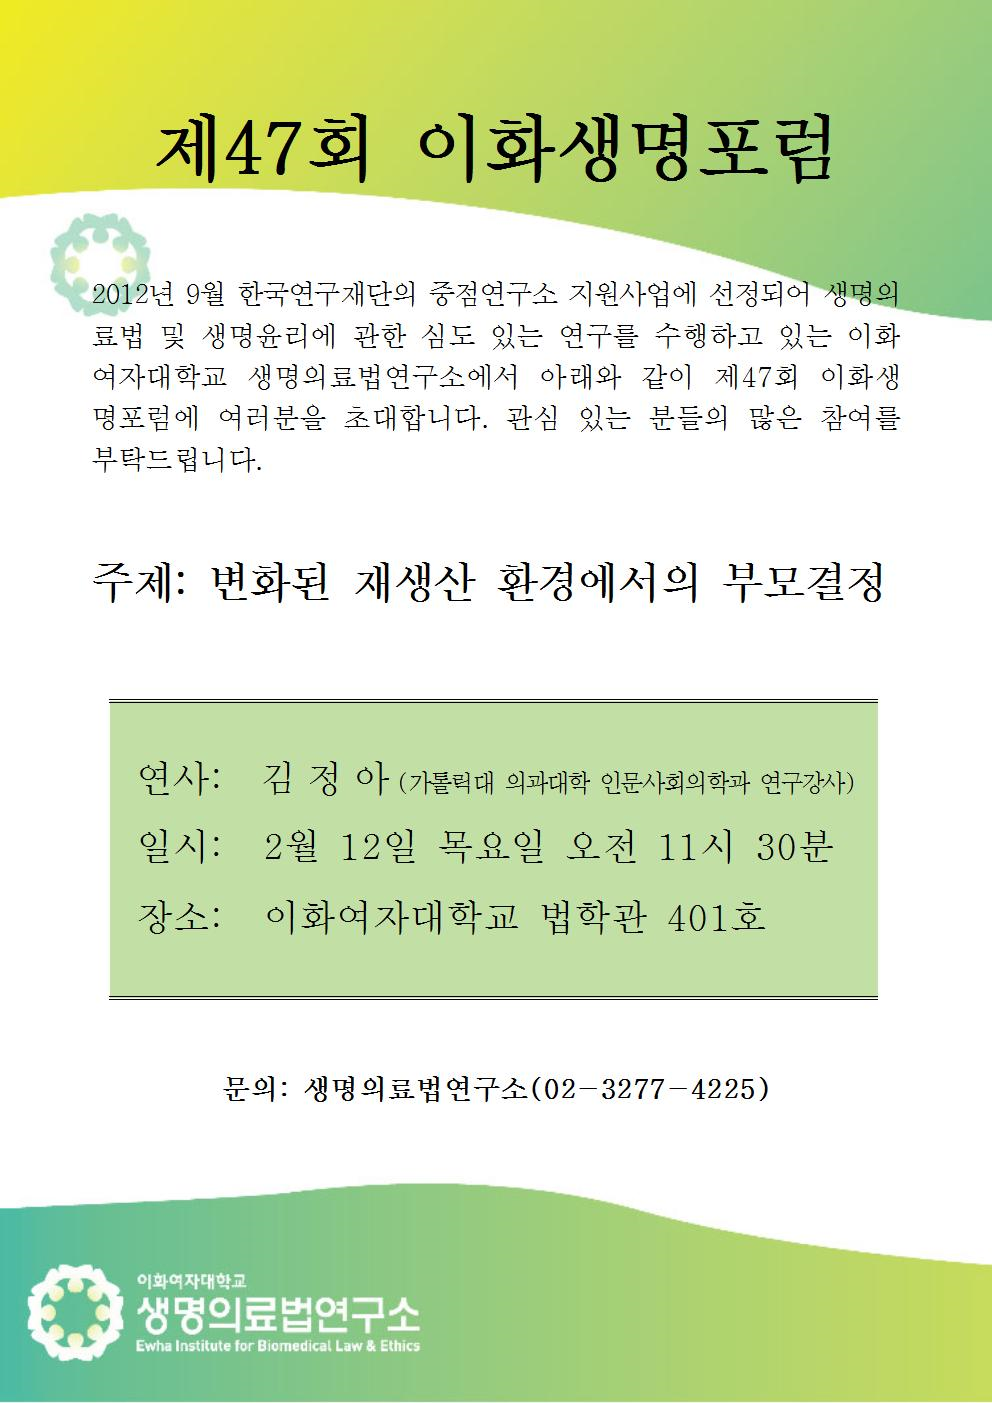 2015_이화생명포럼47회.png